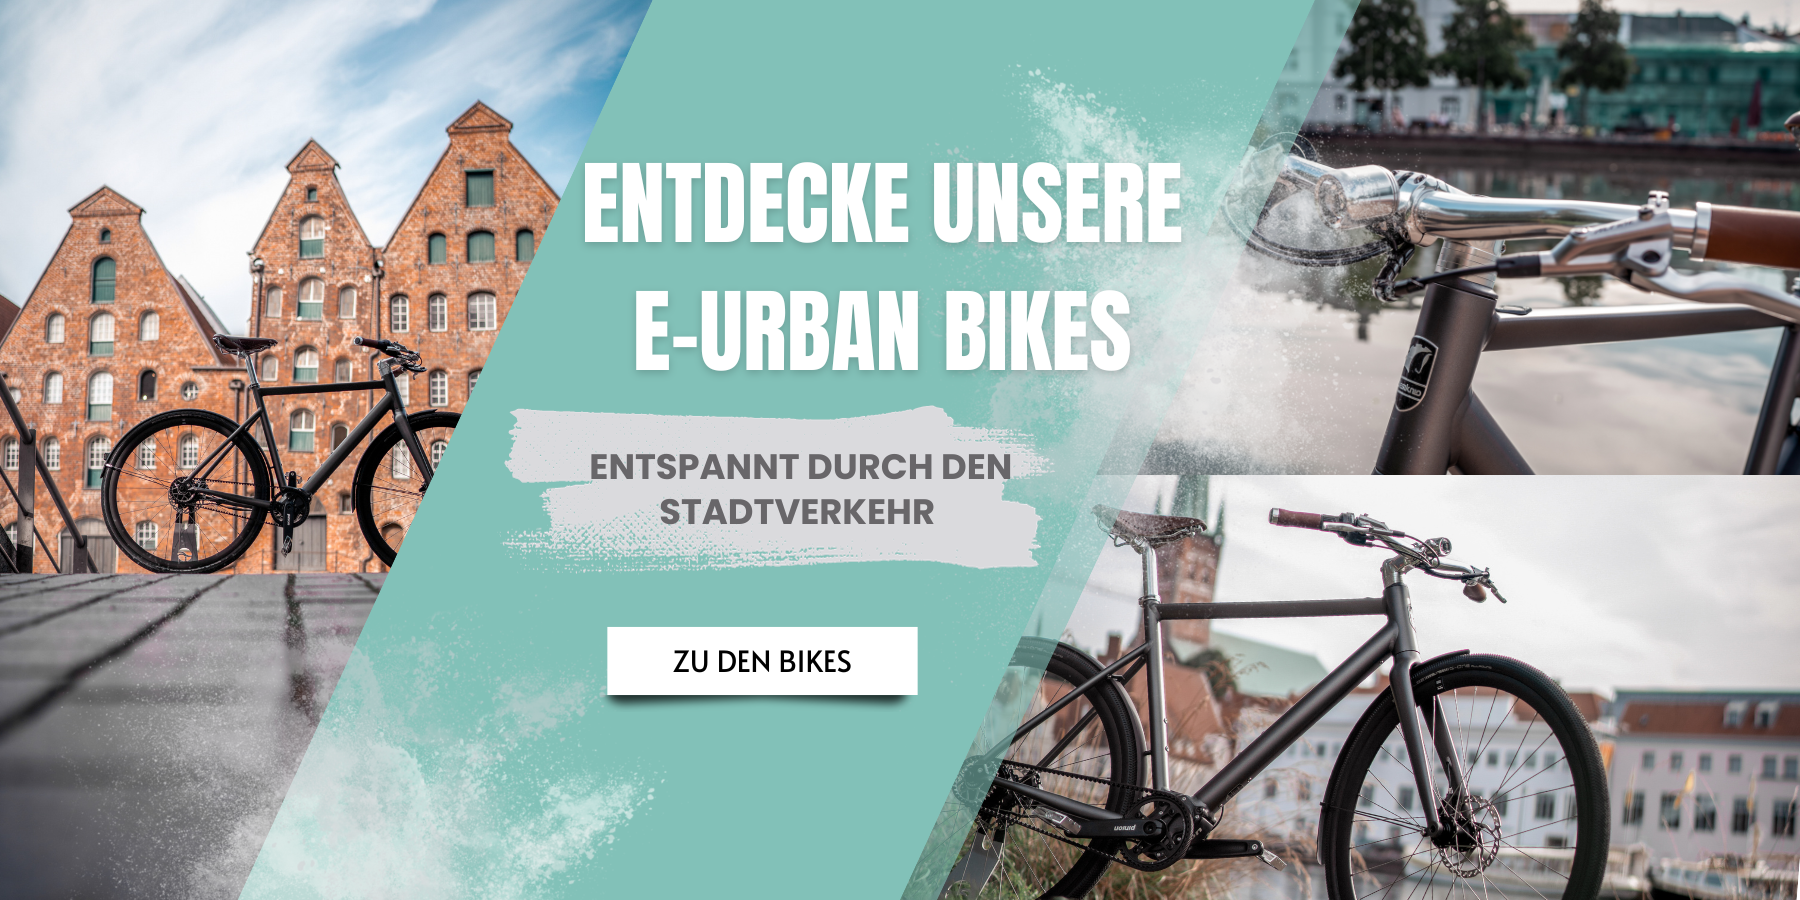 Finde eine top Auswahl an E-Urban Bikes bei JONITO